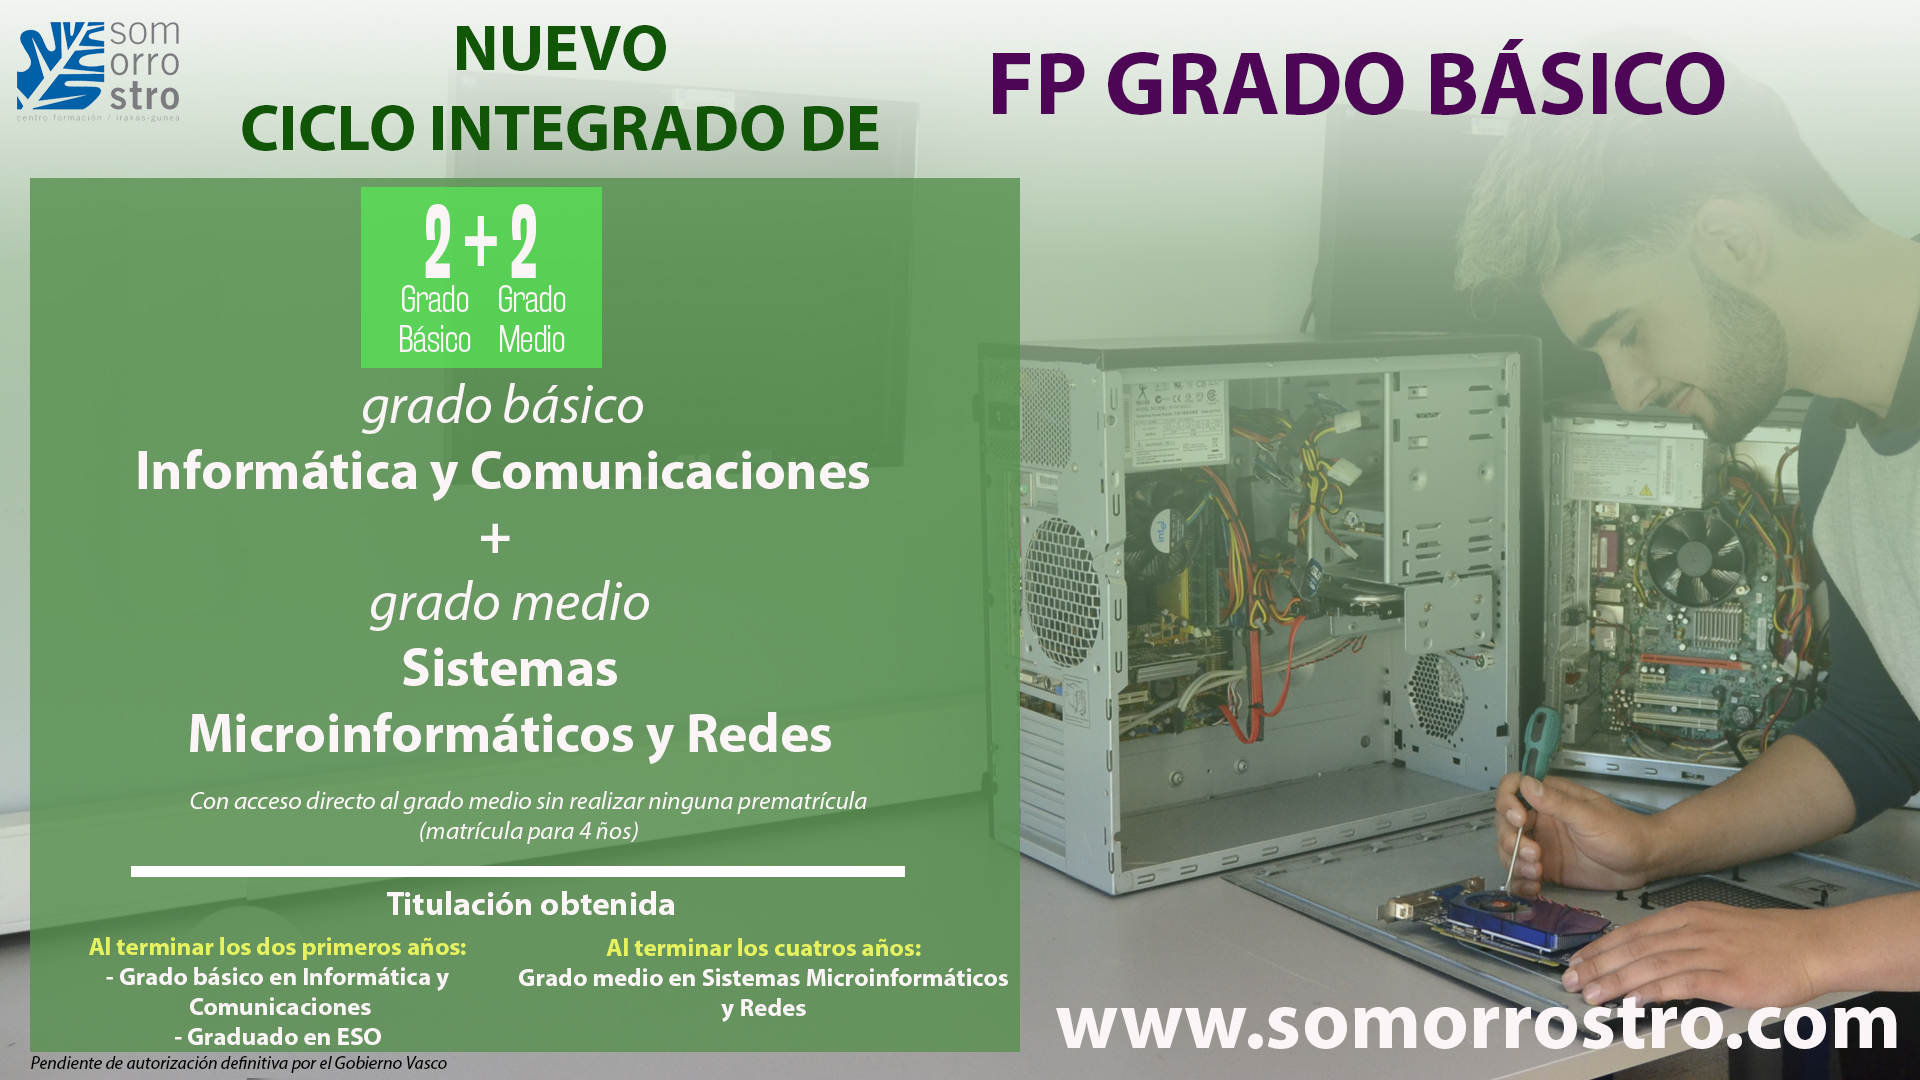 Nuevo ciclo integrado de FP GRADO BÁSICO (2+2)